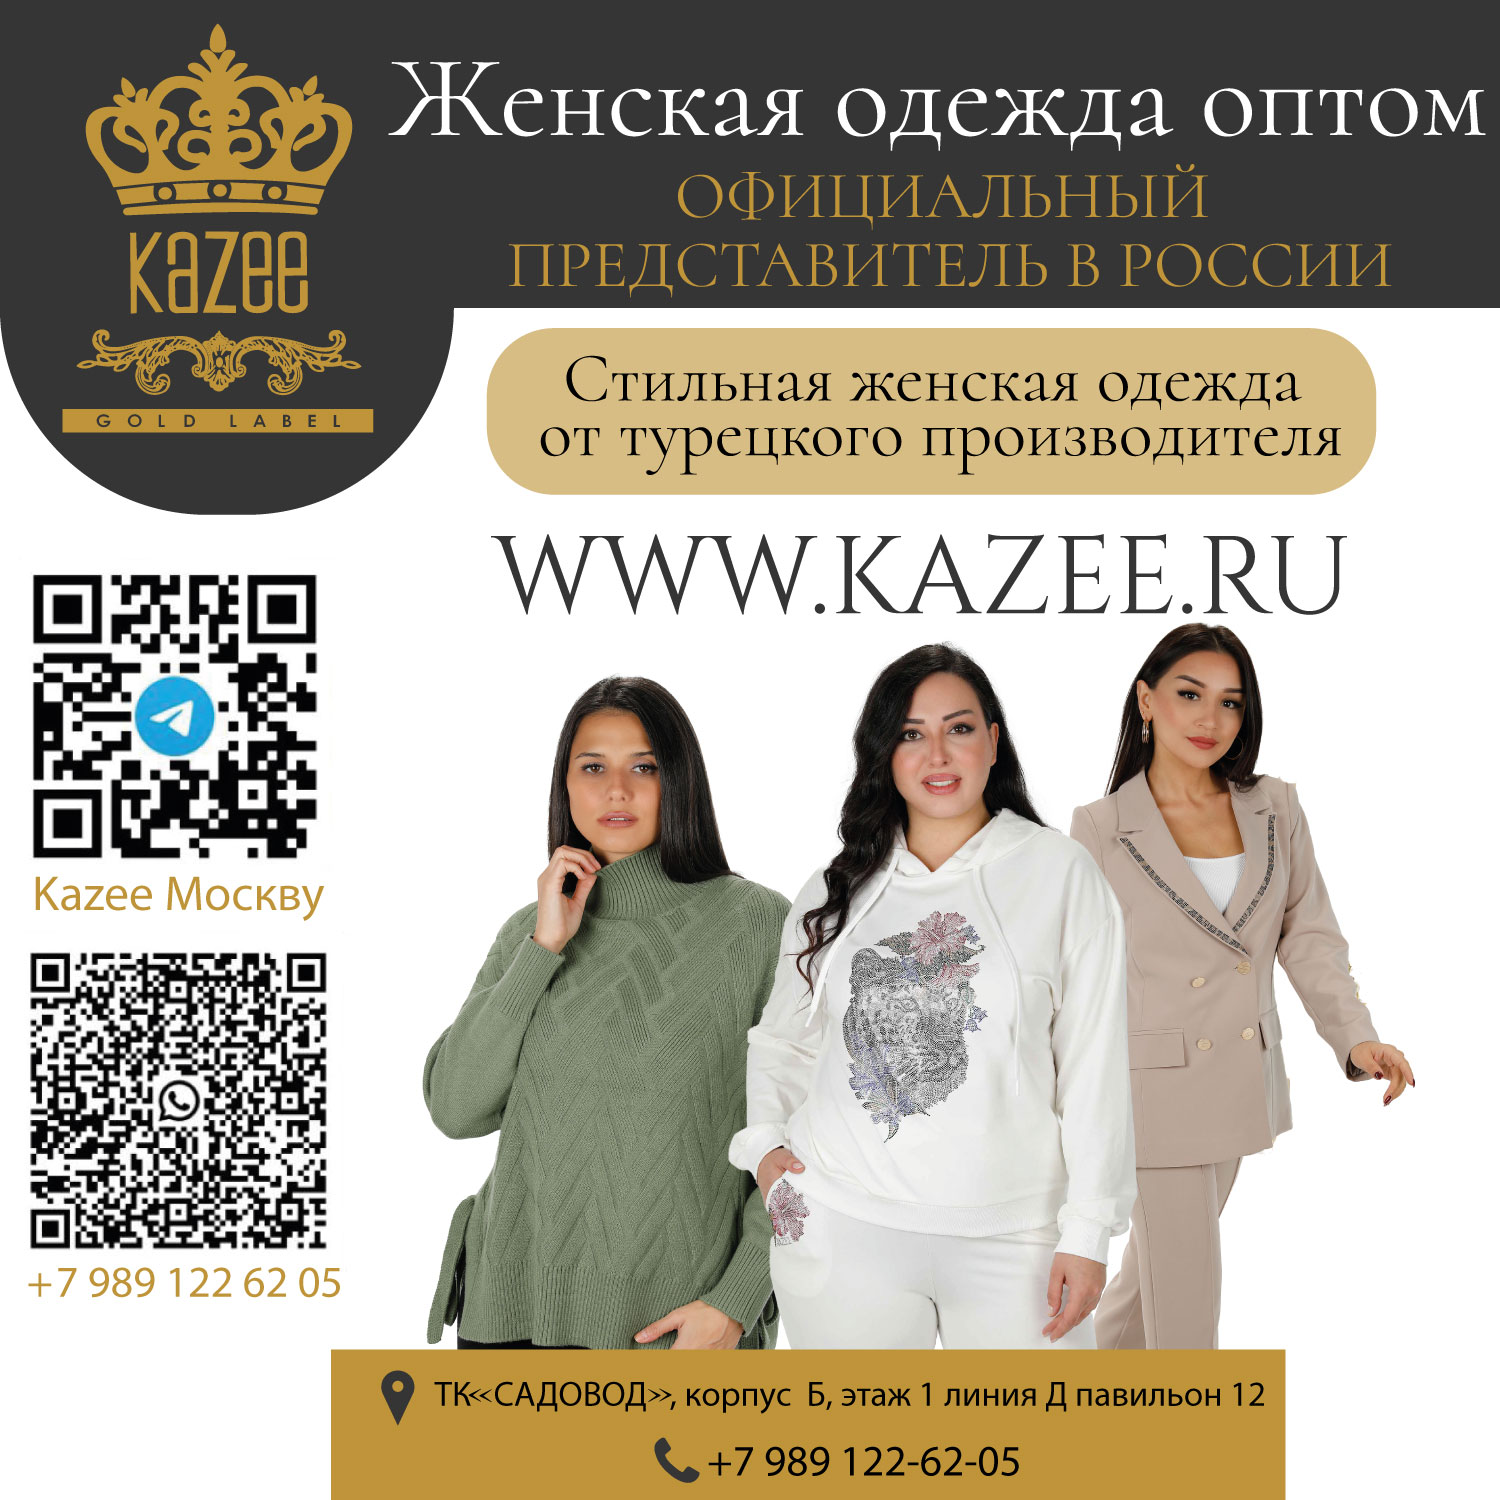 Representante oficial de la tienda KAZEE en Rusia